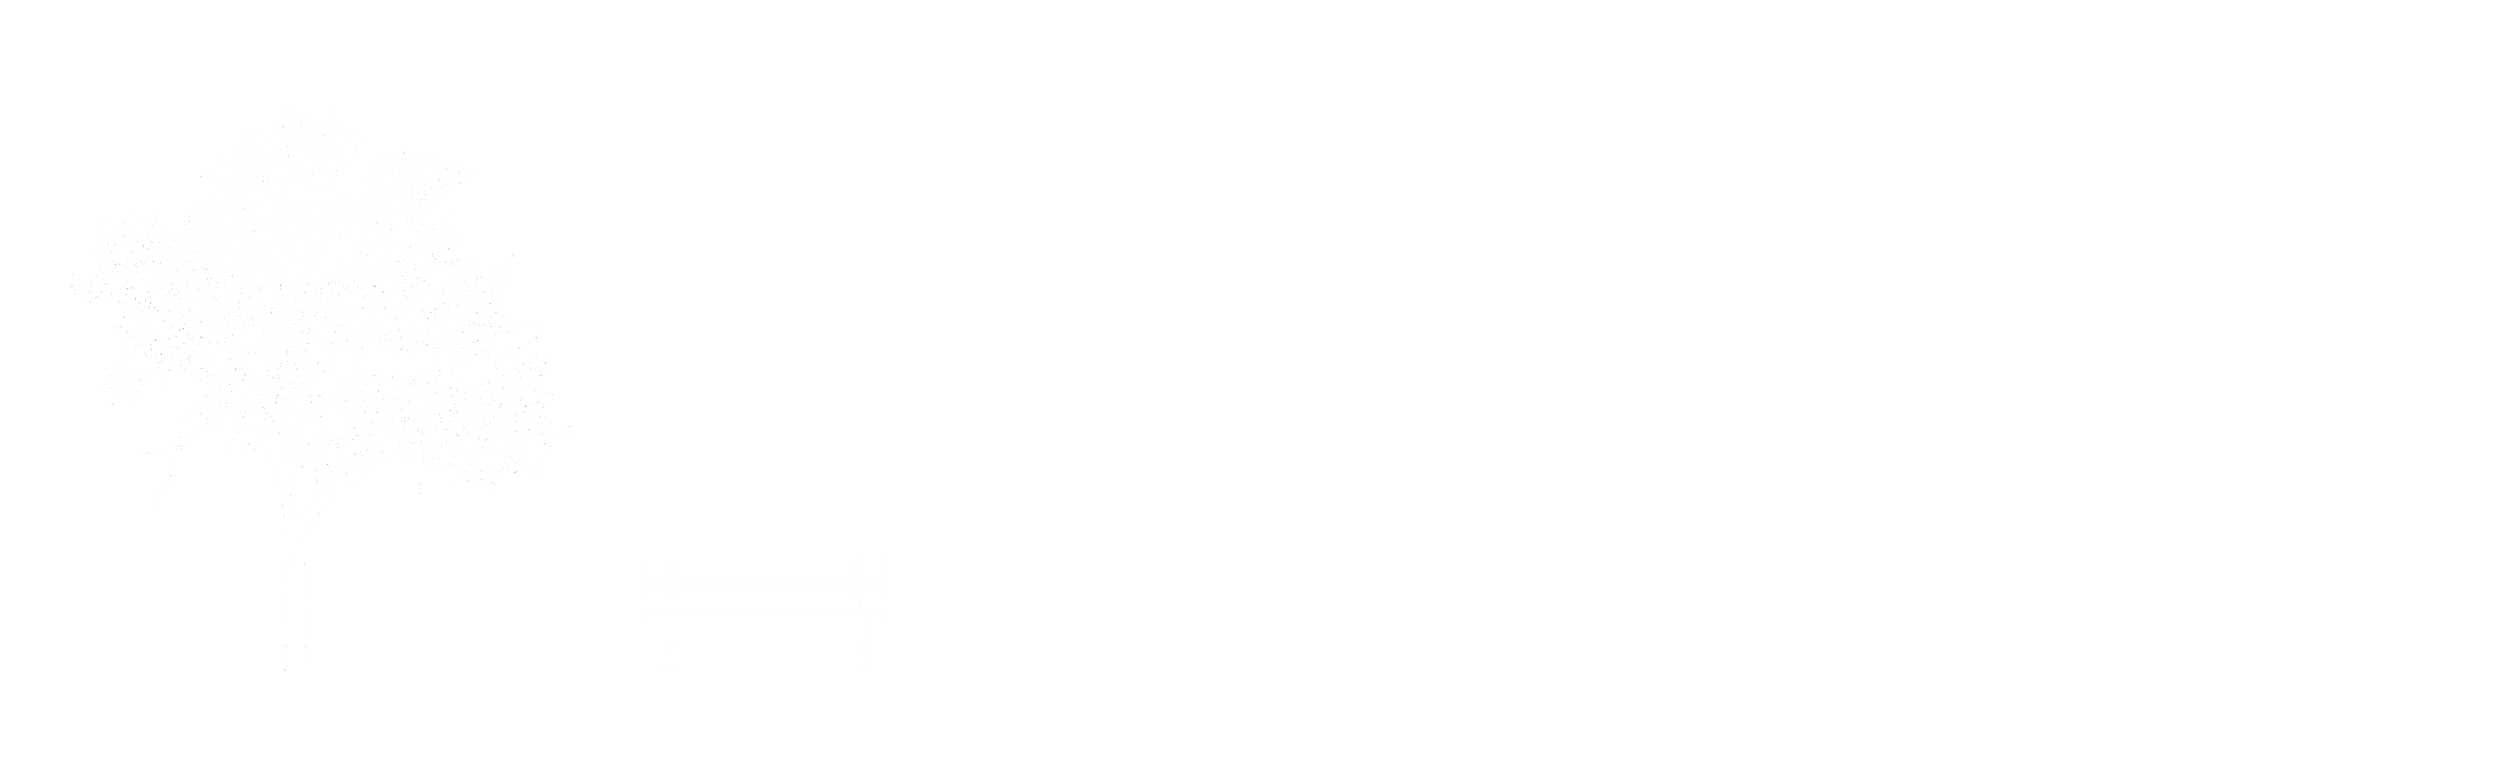 urban spaces